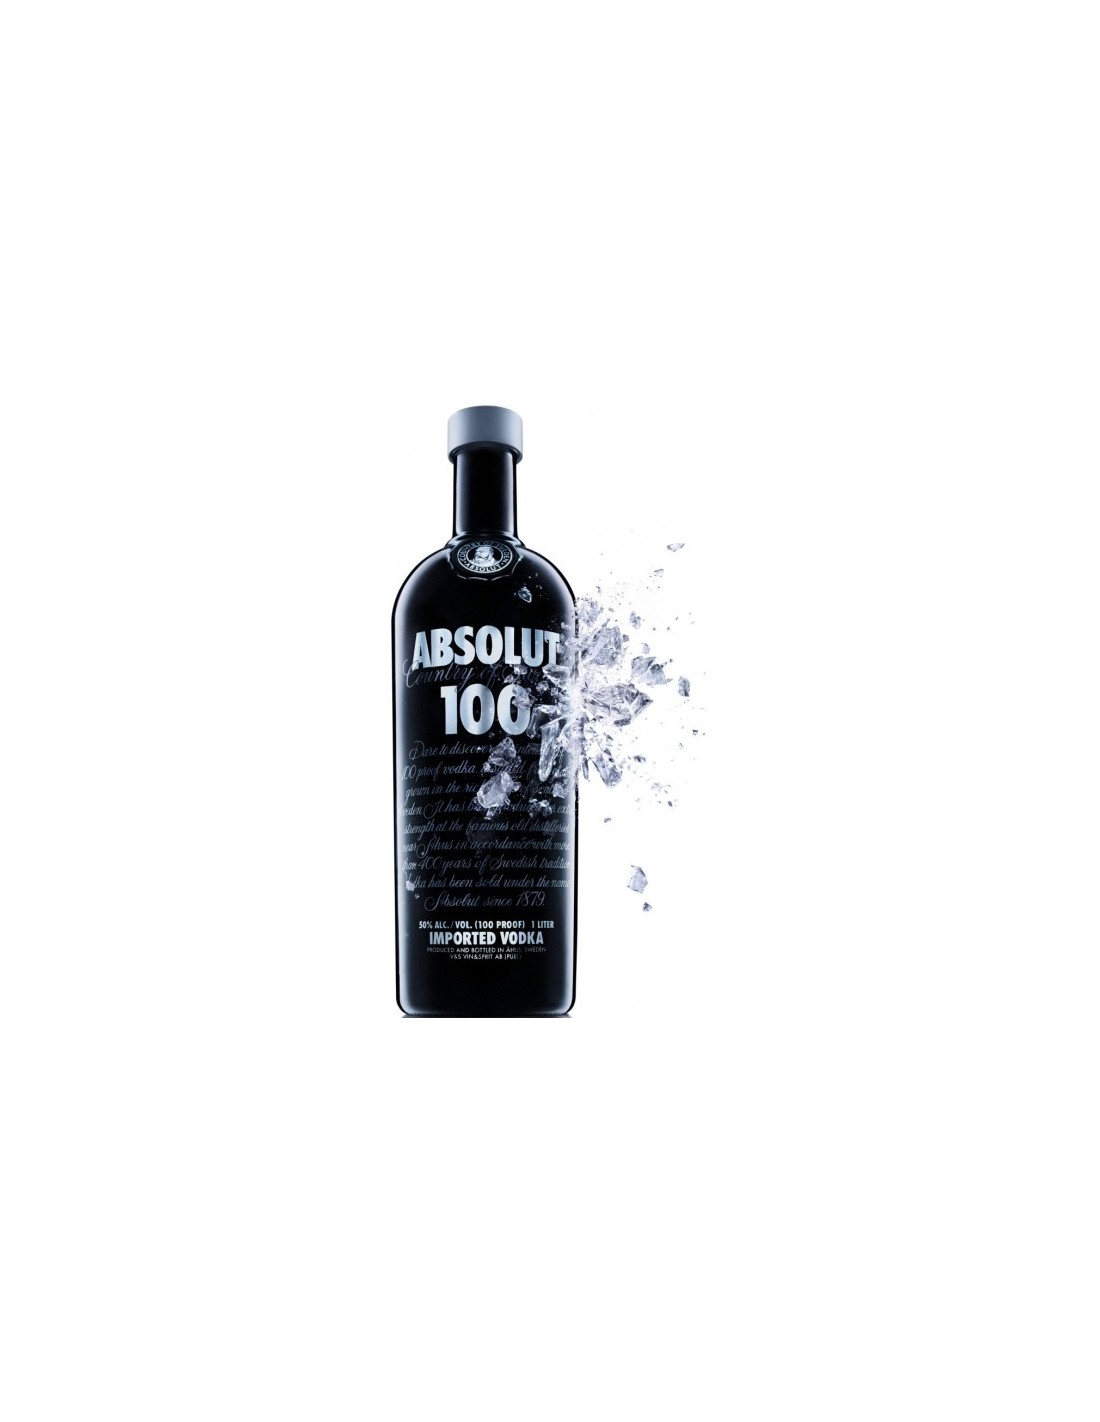 Vodca Absolut 100 0.7L, 50% alc., Suedia alcooldiscount.ro